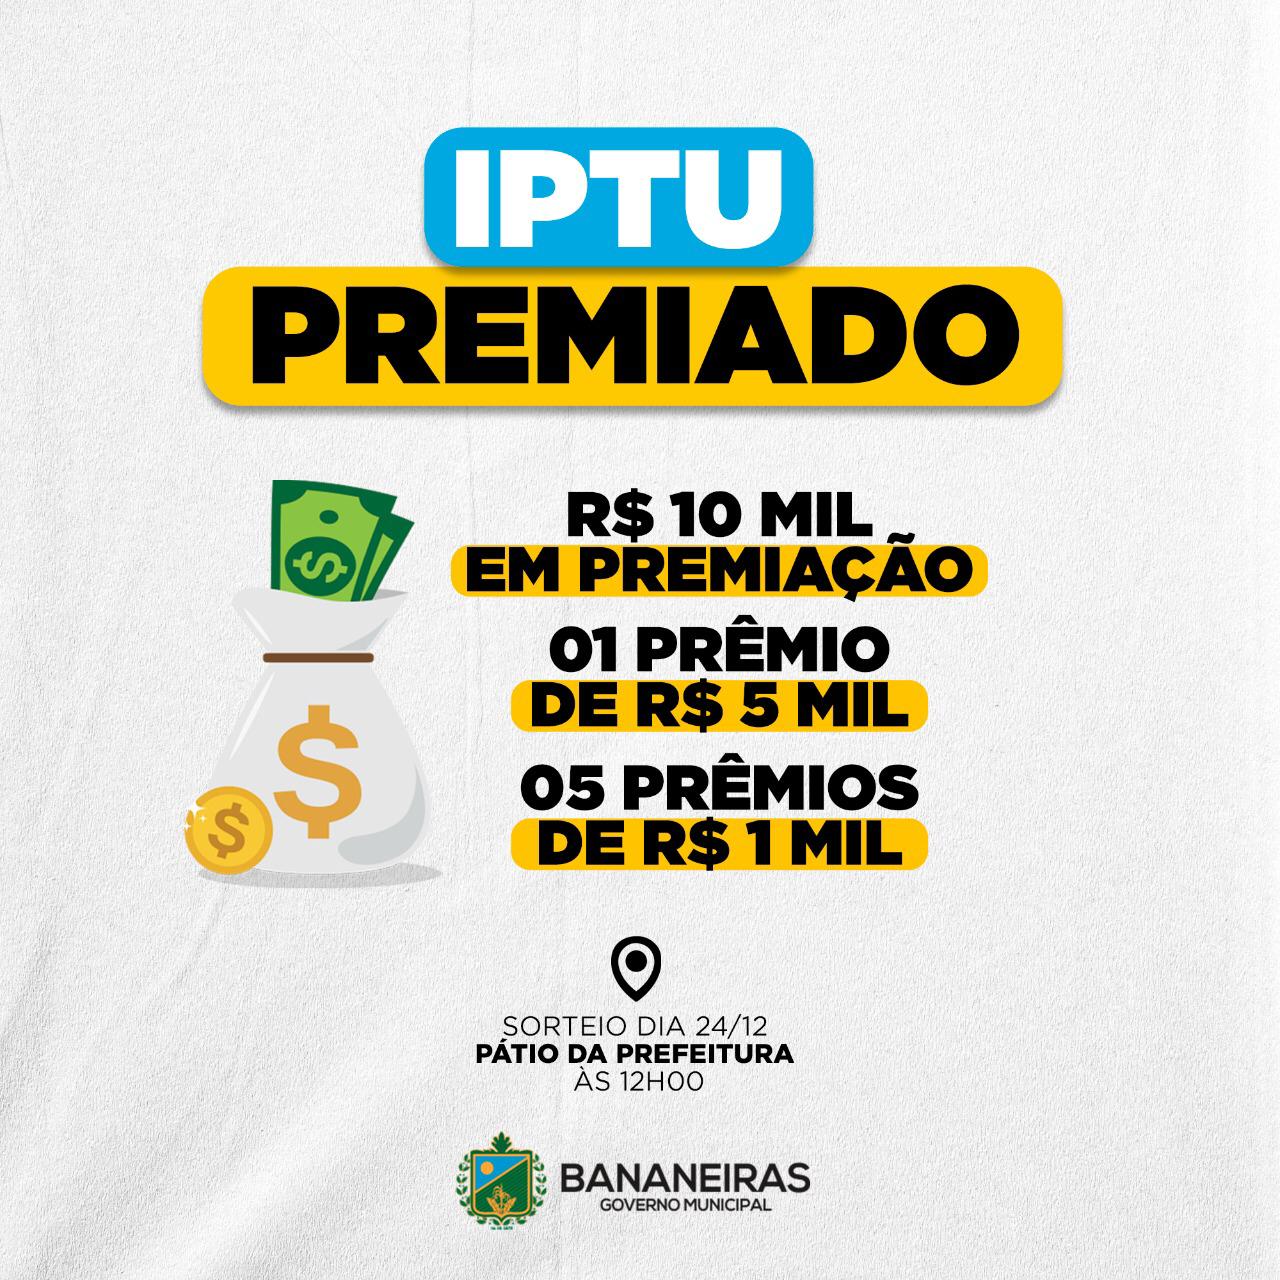 Prefeitura de Bananeiras realiza o IPTU premiado 2020 e premiação chega a R$ 10 mil reais